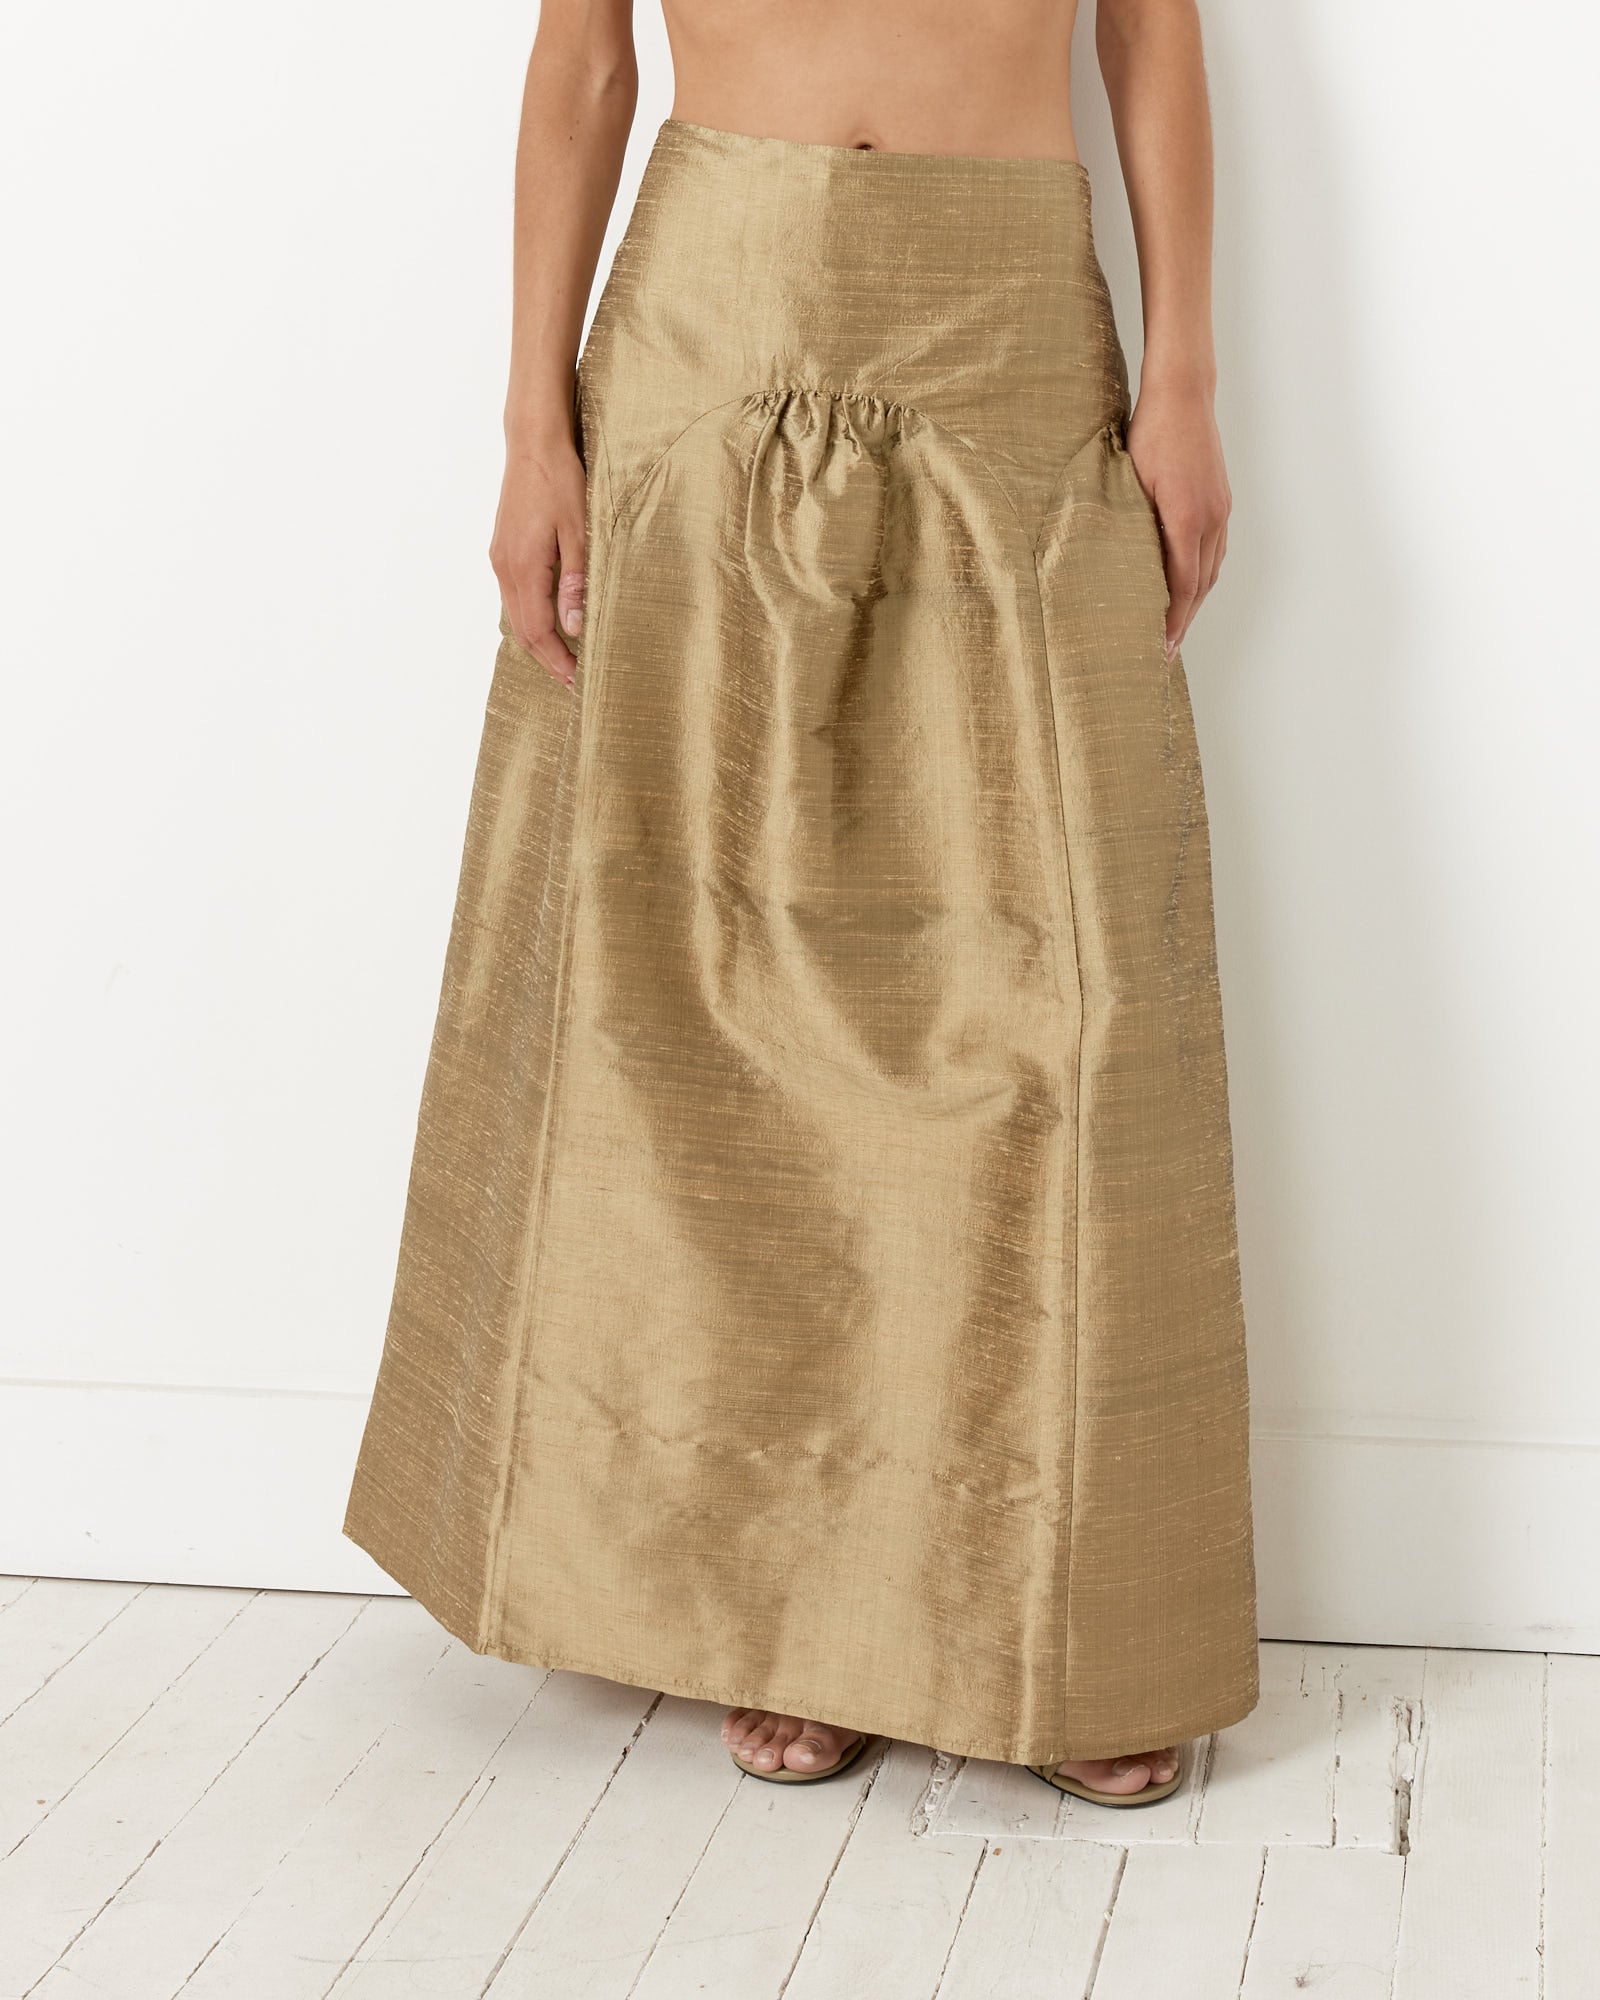 Pallon Skirt in Gold